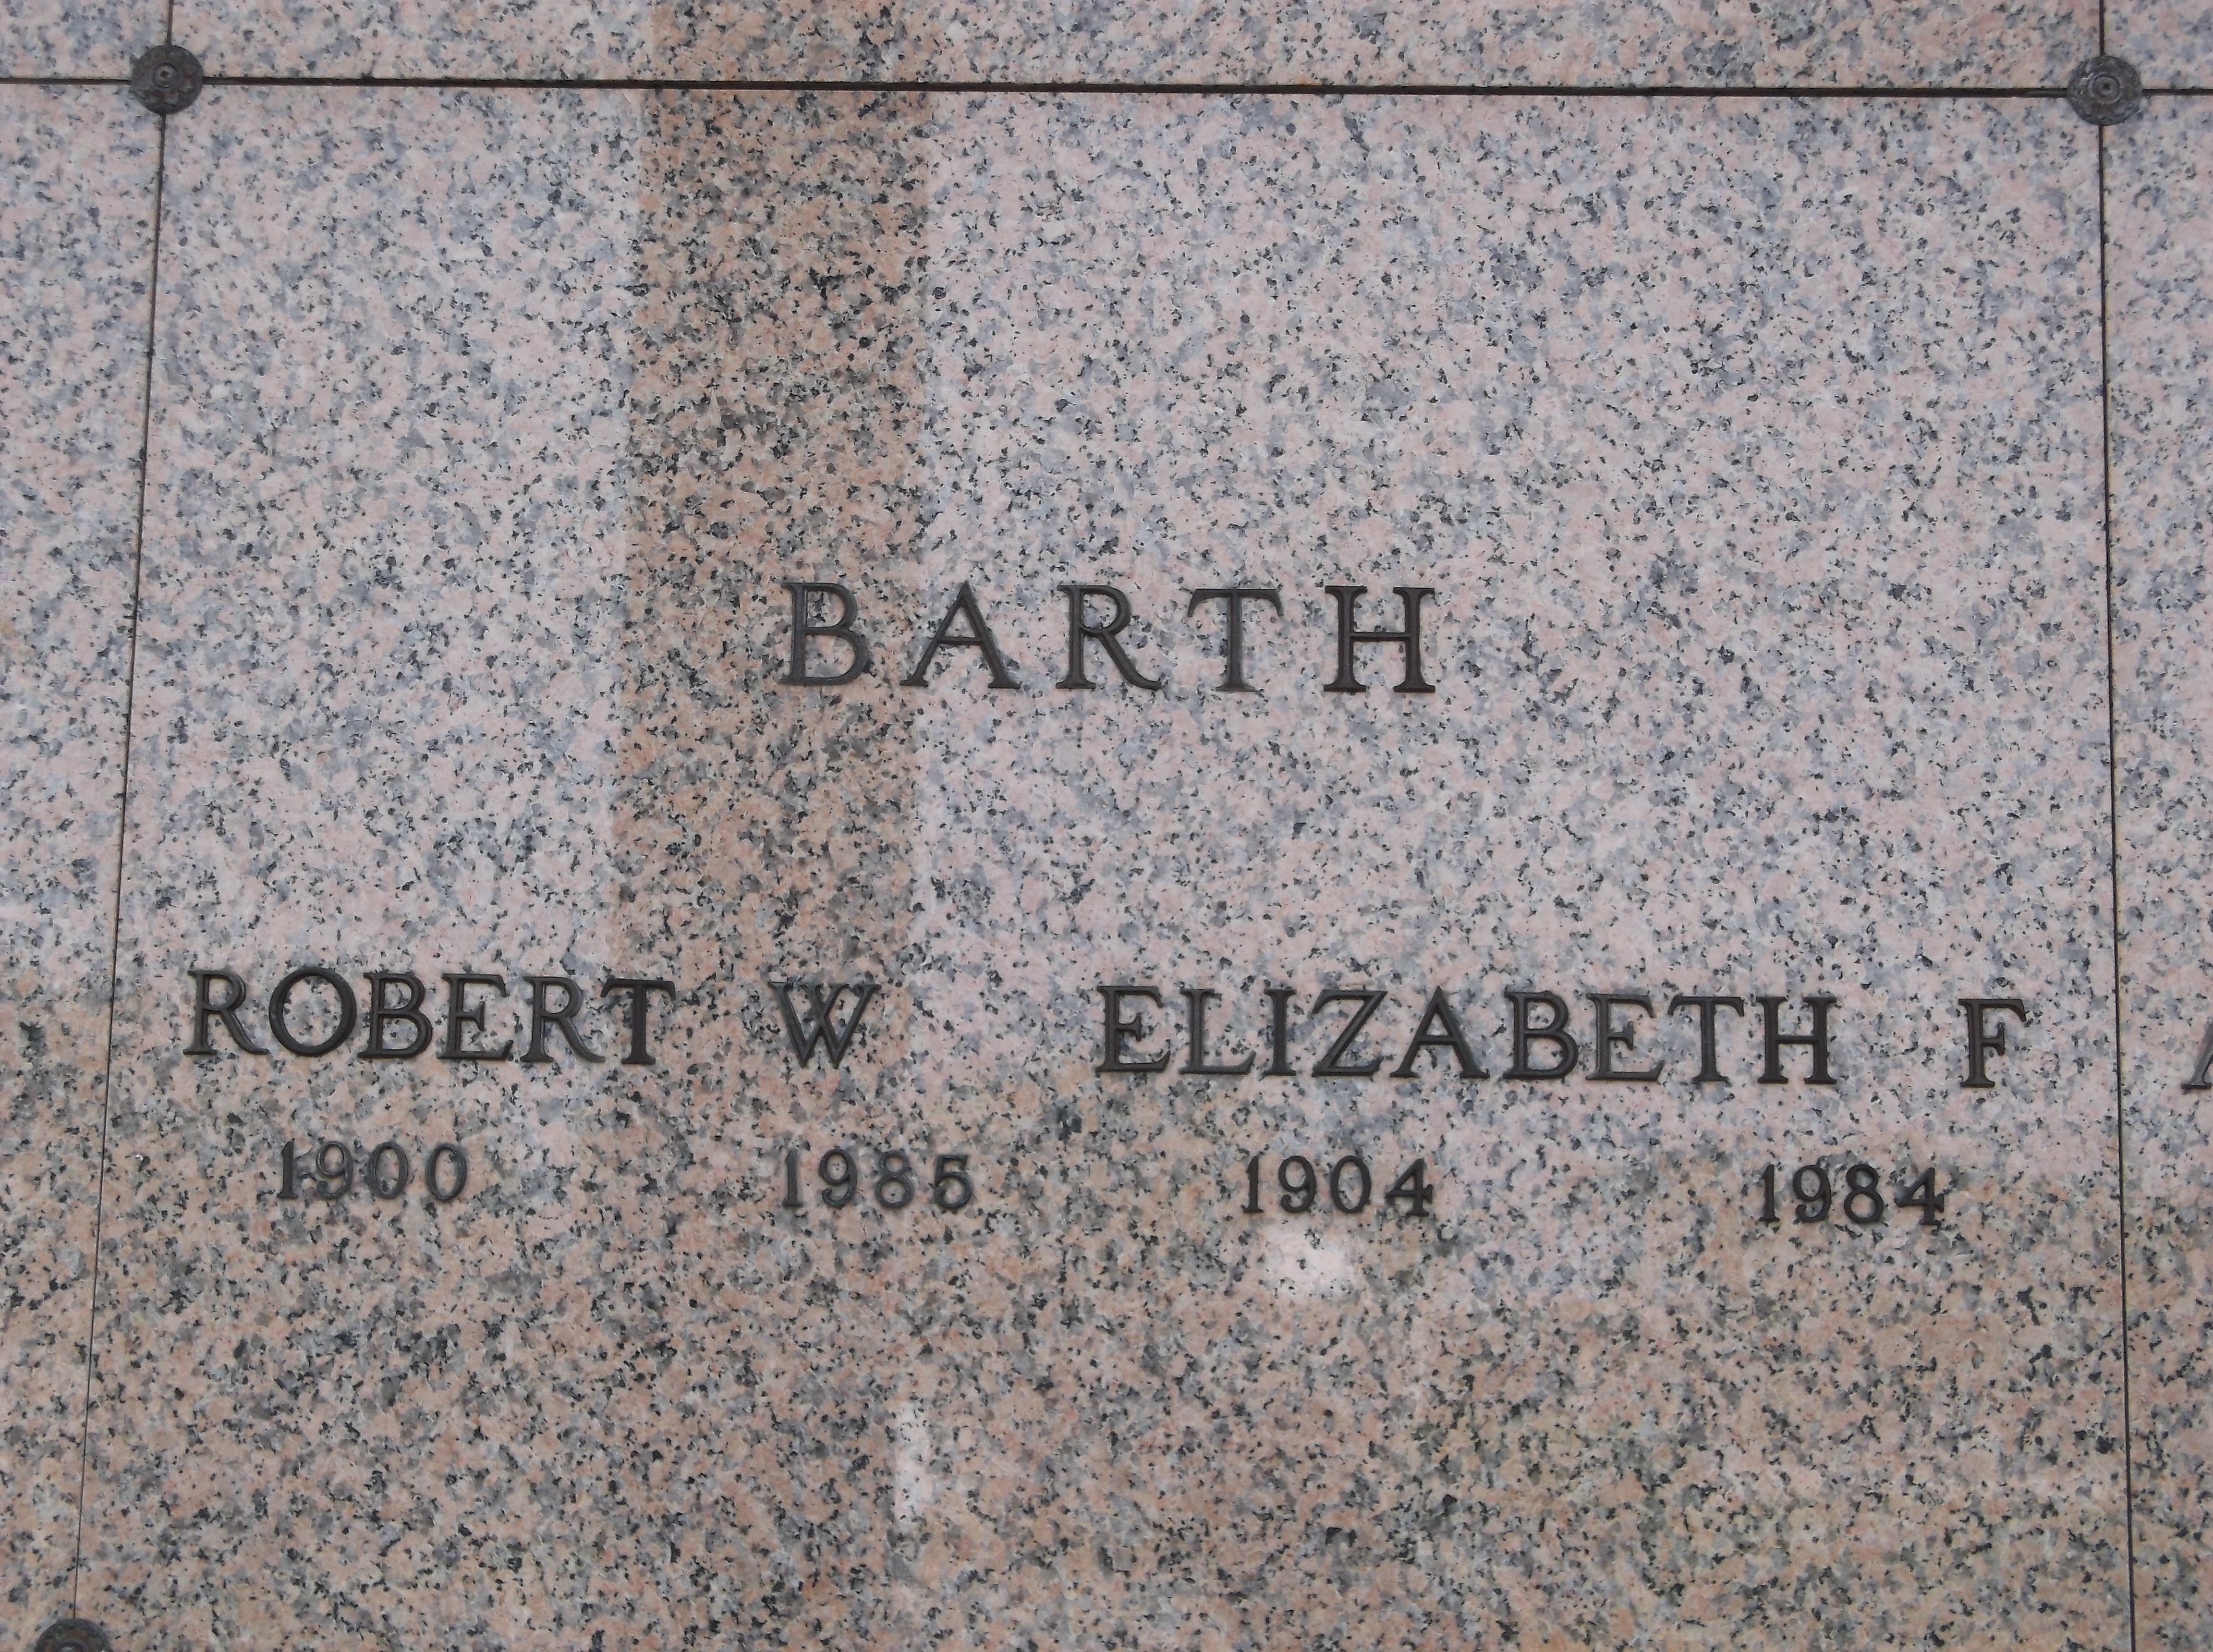 Robert W Barth